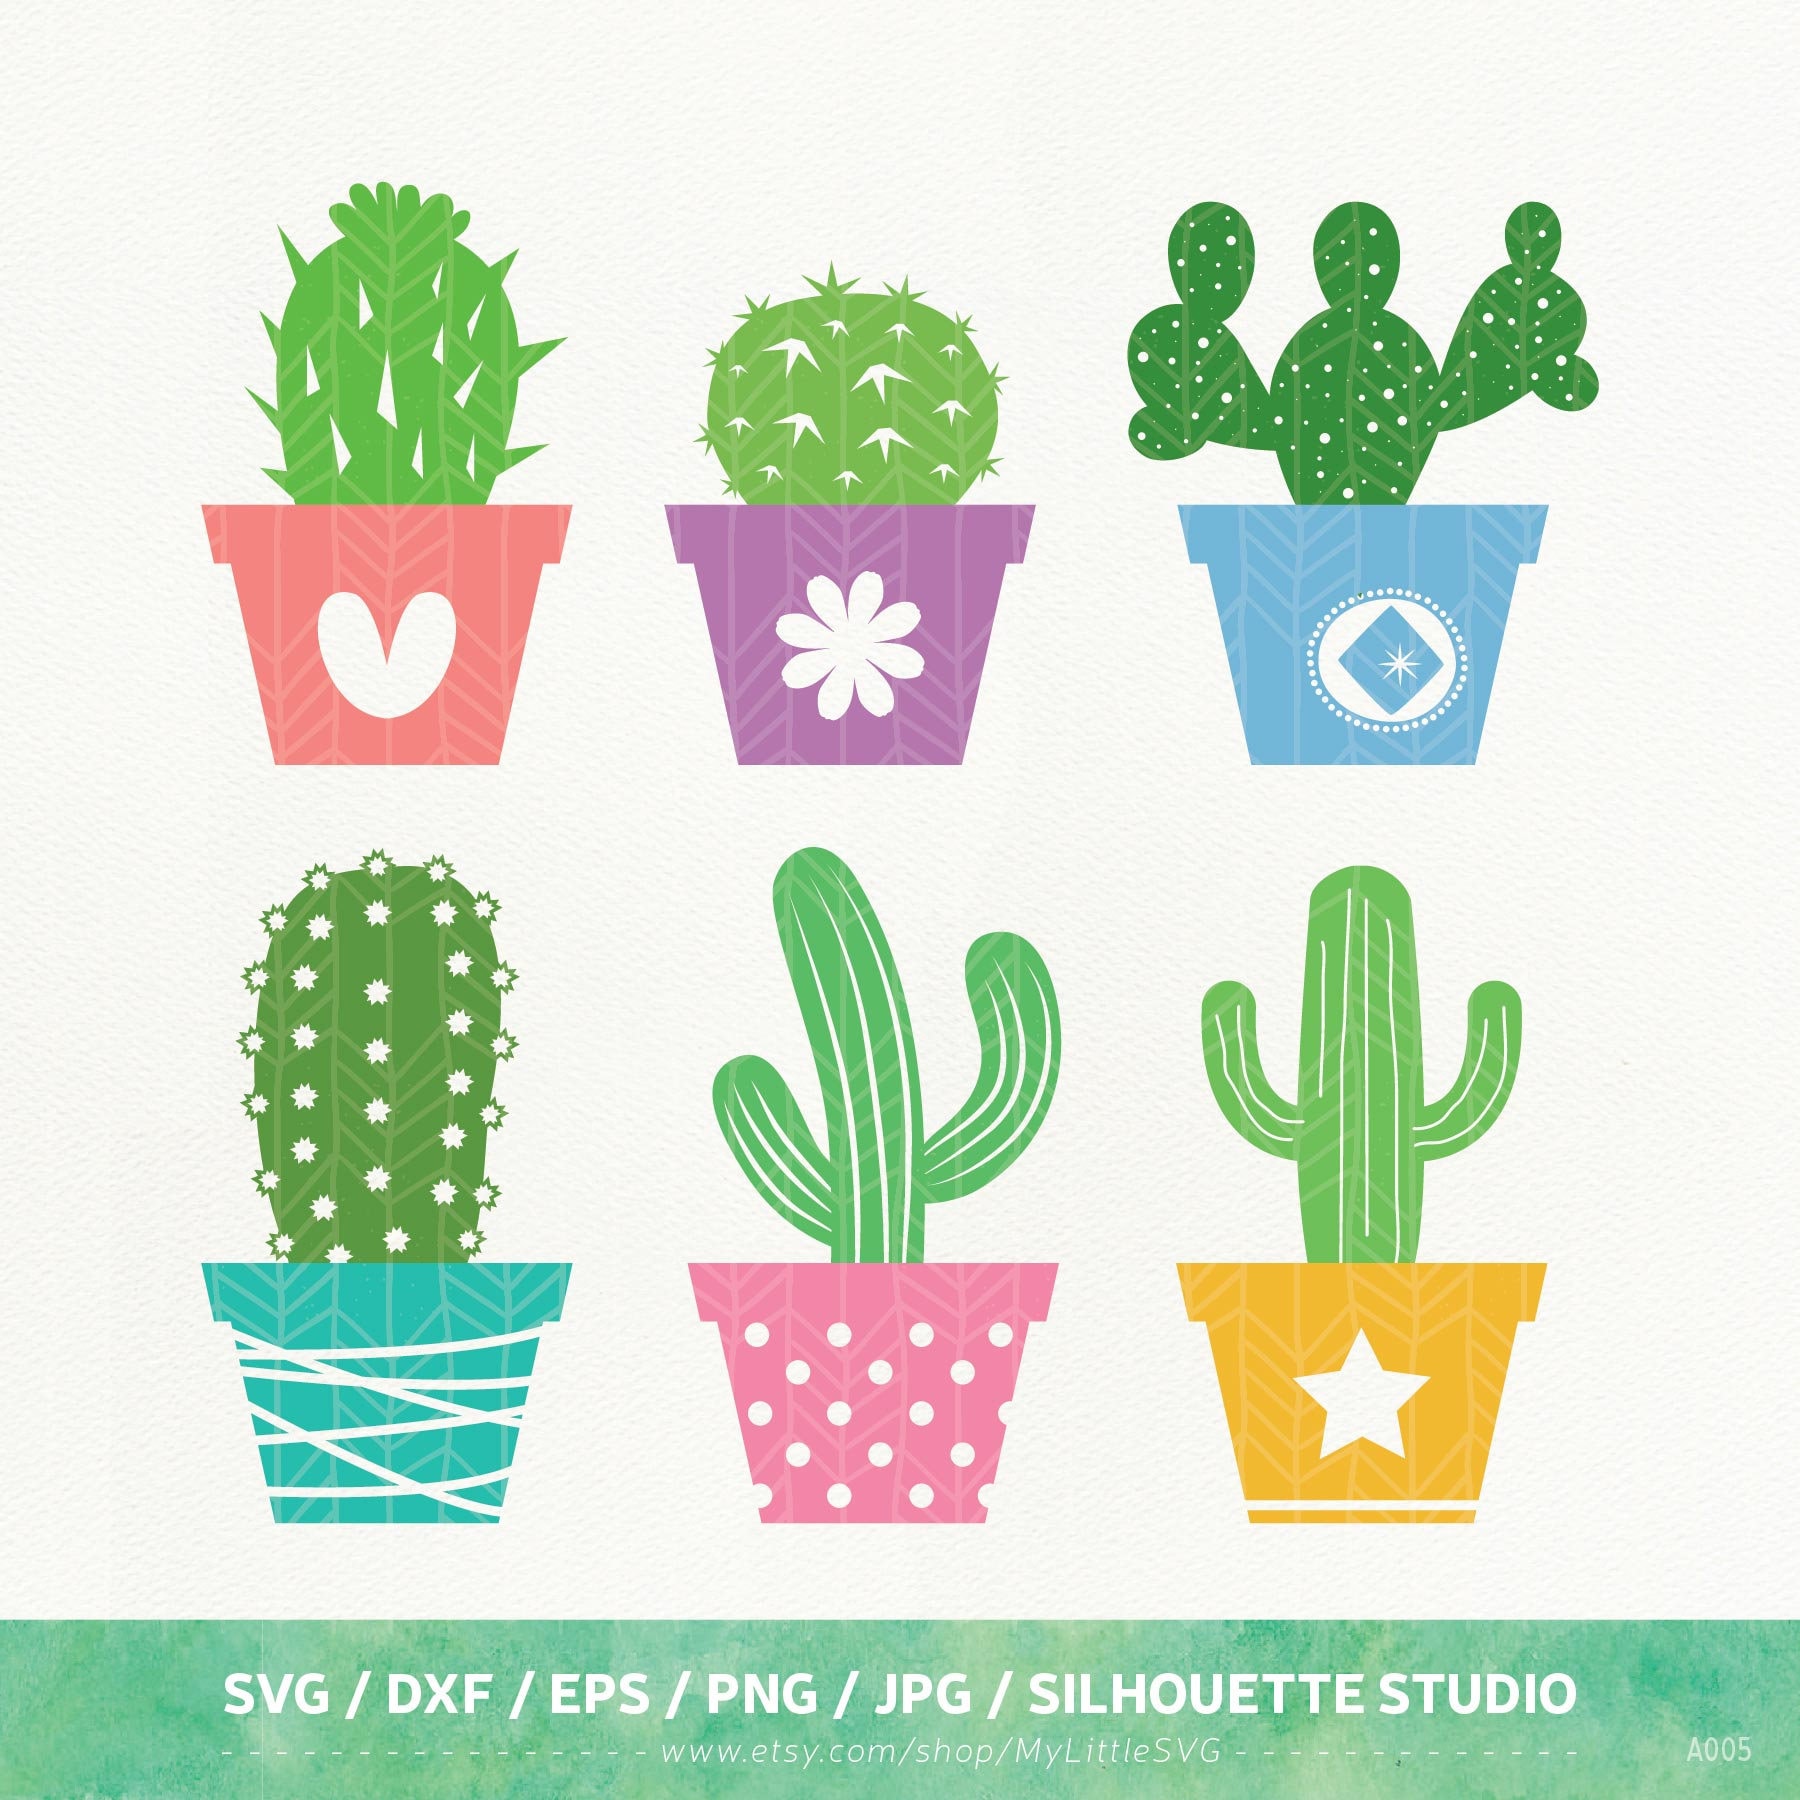 Download Free SVG Cut File - Cactus clipart, Succulent svg, Cactus bundle, ...